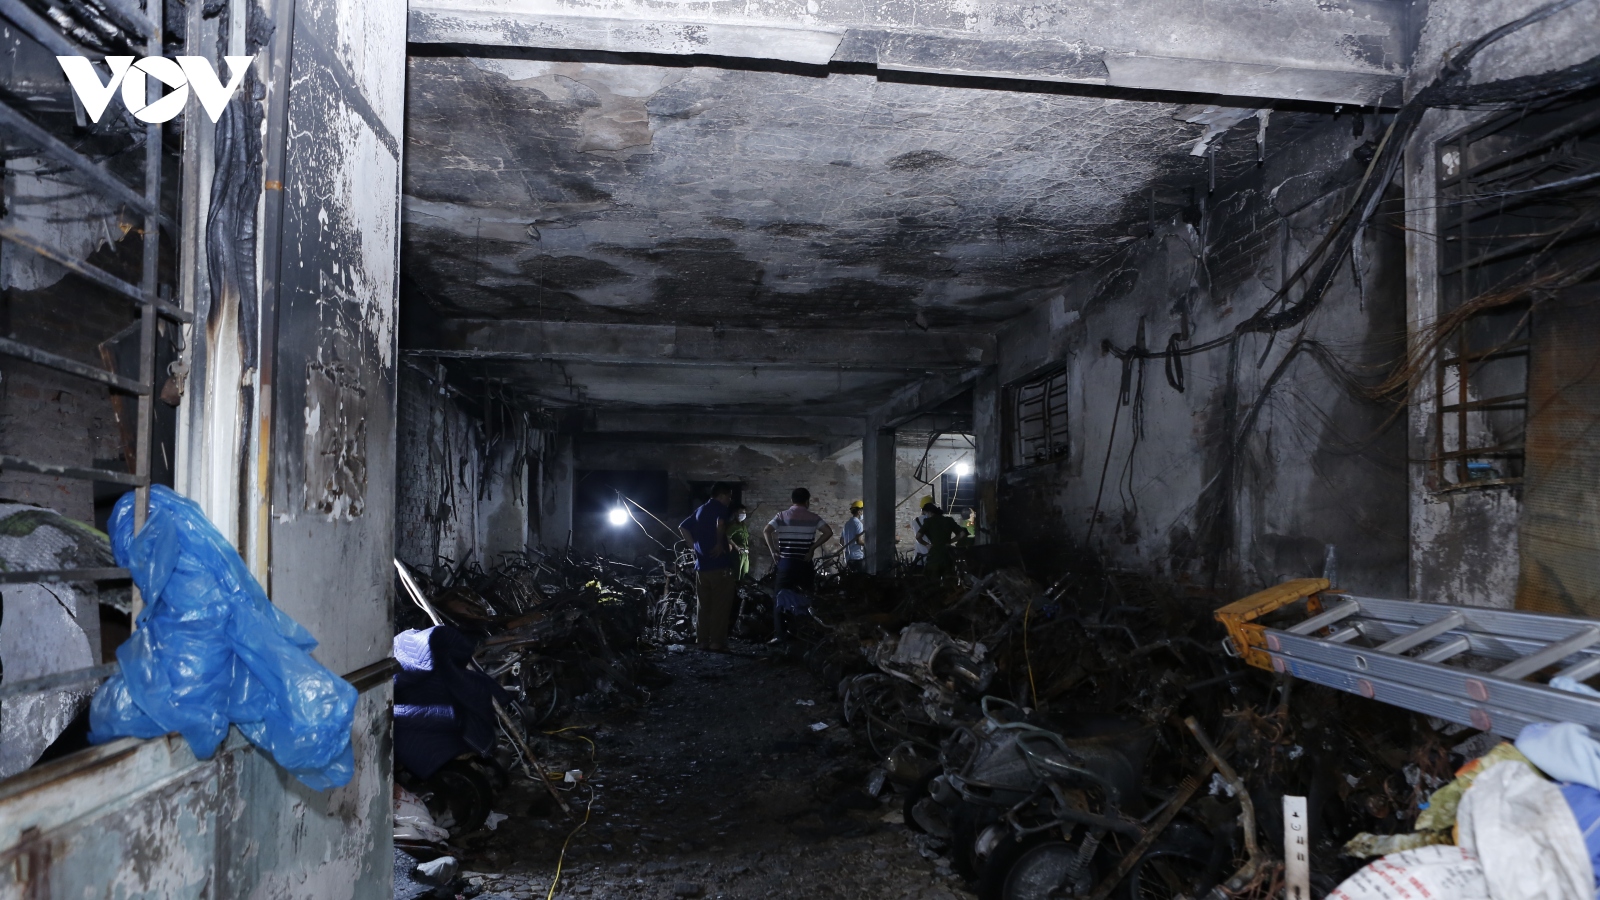 Hà Nội tạm dừng các hoạt động giải trí sau vụ cháy khiến 56 người chết